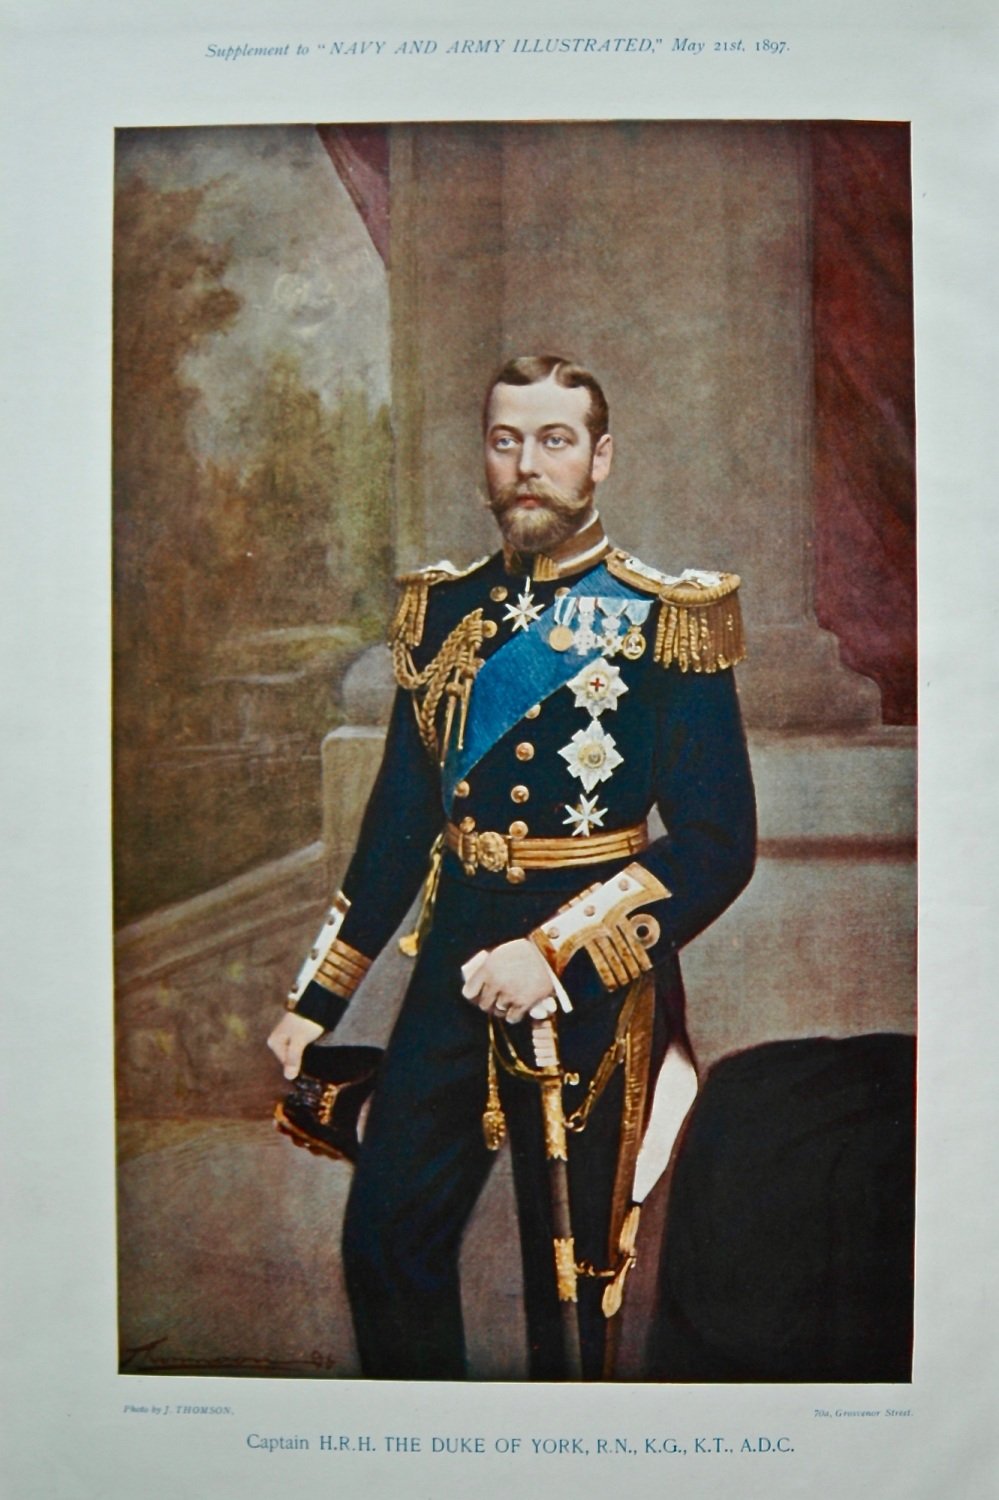 Captain H.R.H. The Duke of York, R.N., K.G., K.T., A.D.C. 1897.